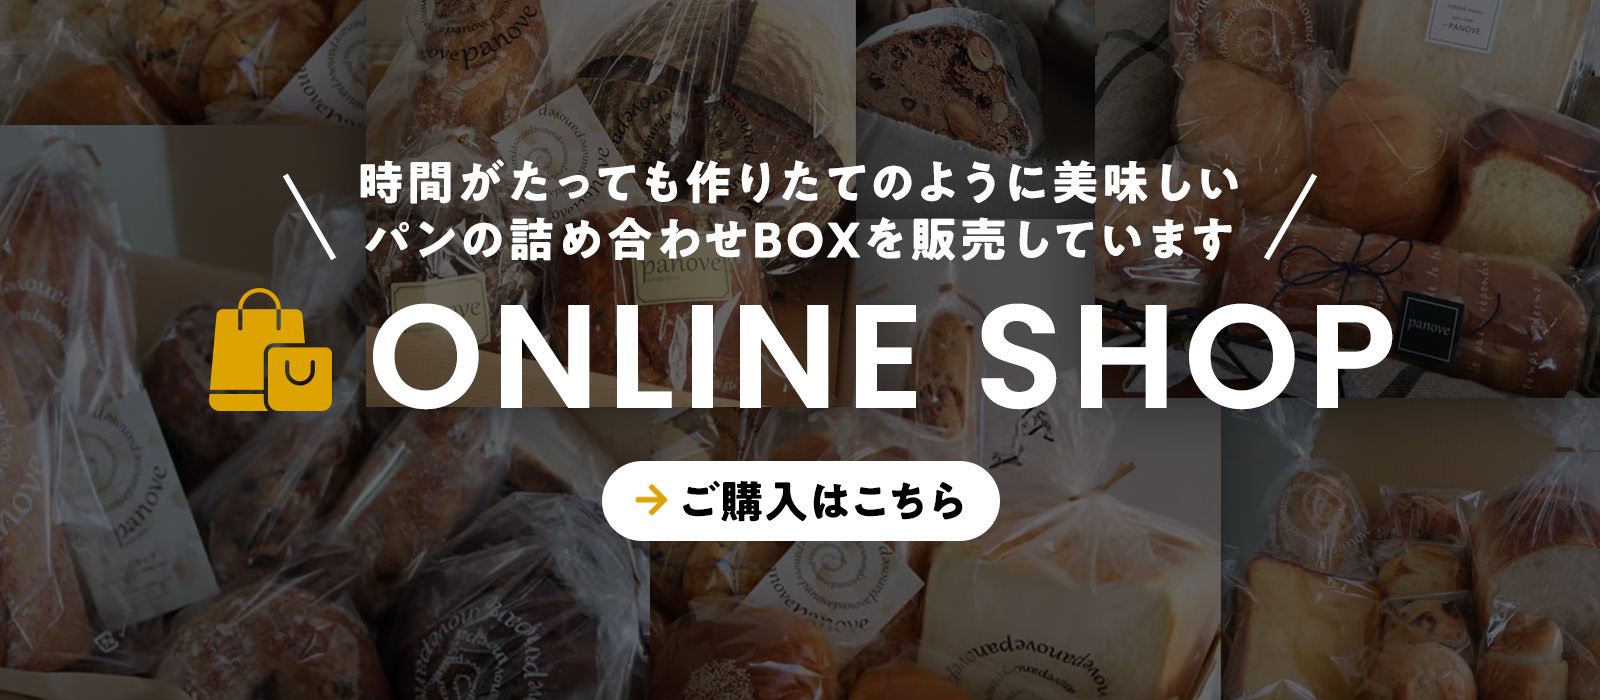 時間がたっても作りたてのように美味しいパンの詰め合わせBOXを販売しています Online Shop